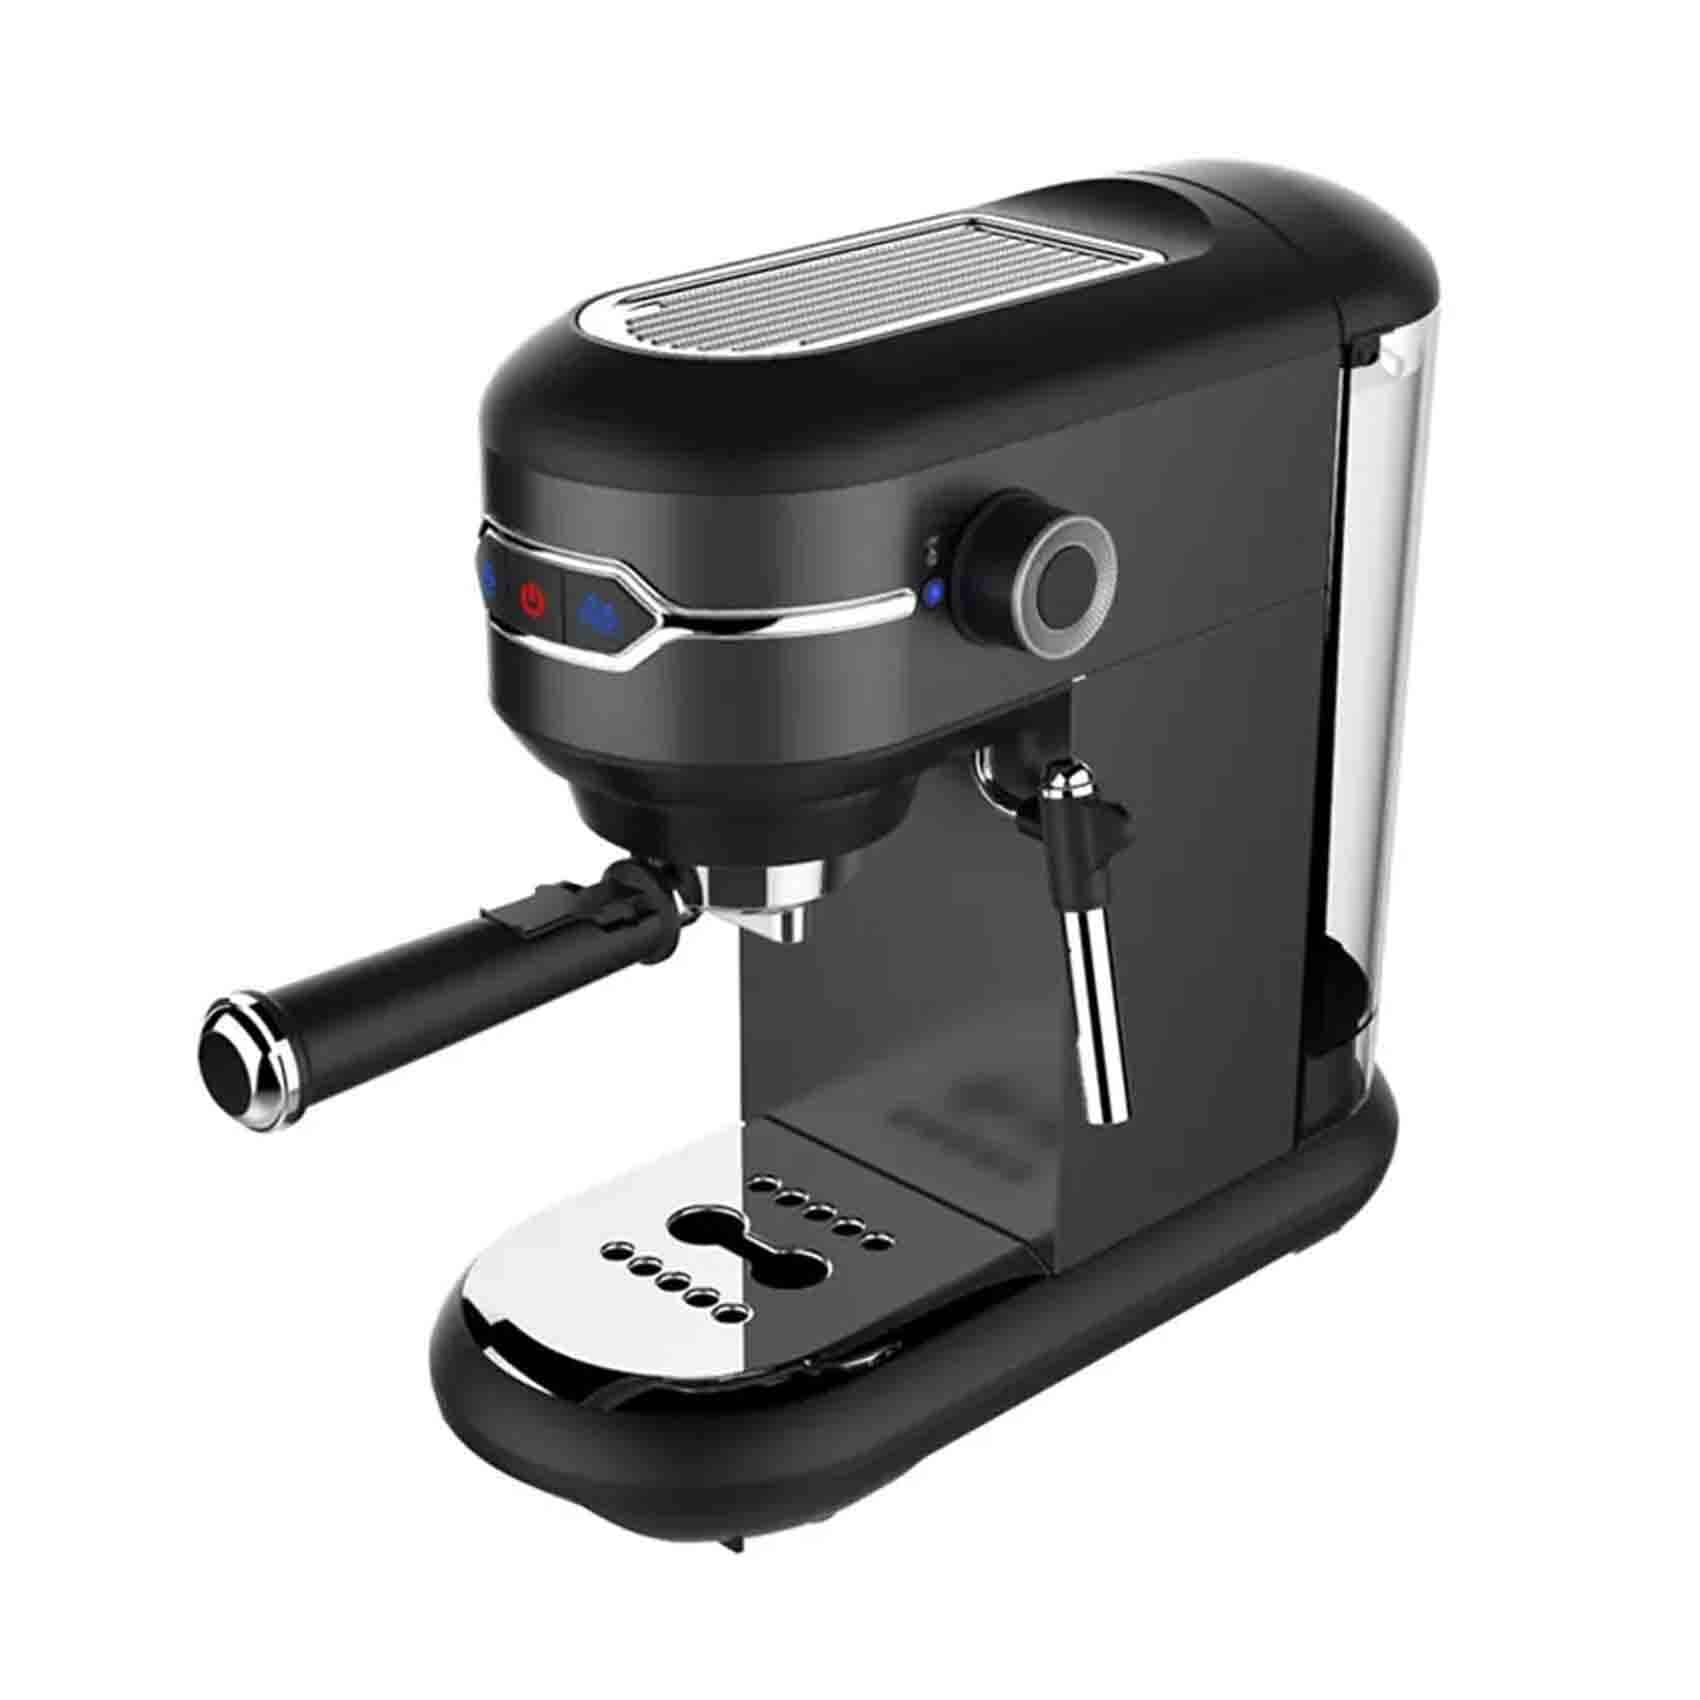 Thomson ST-504 Espresso 3-in-1 Coffee Machine - Black